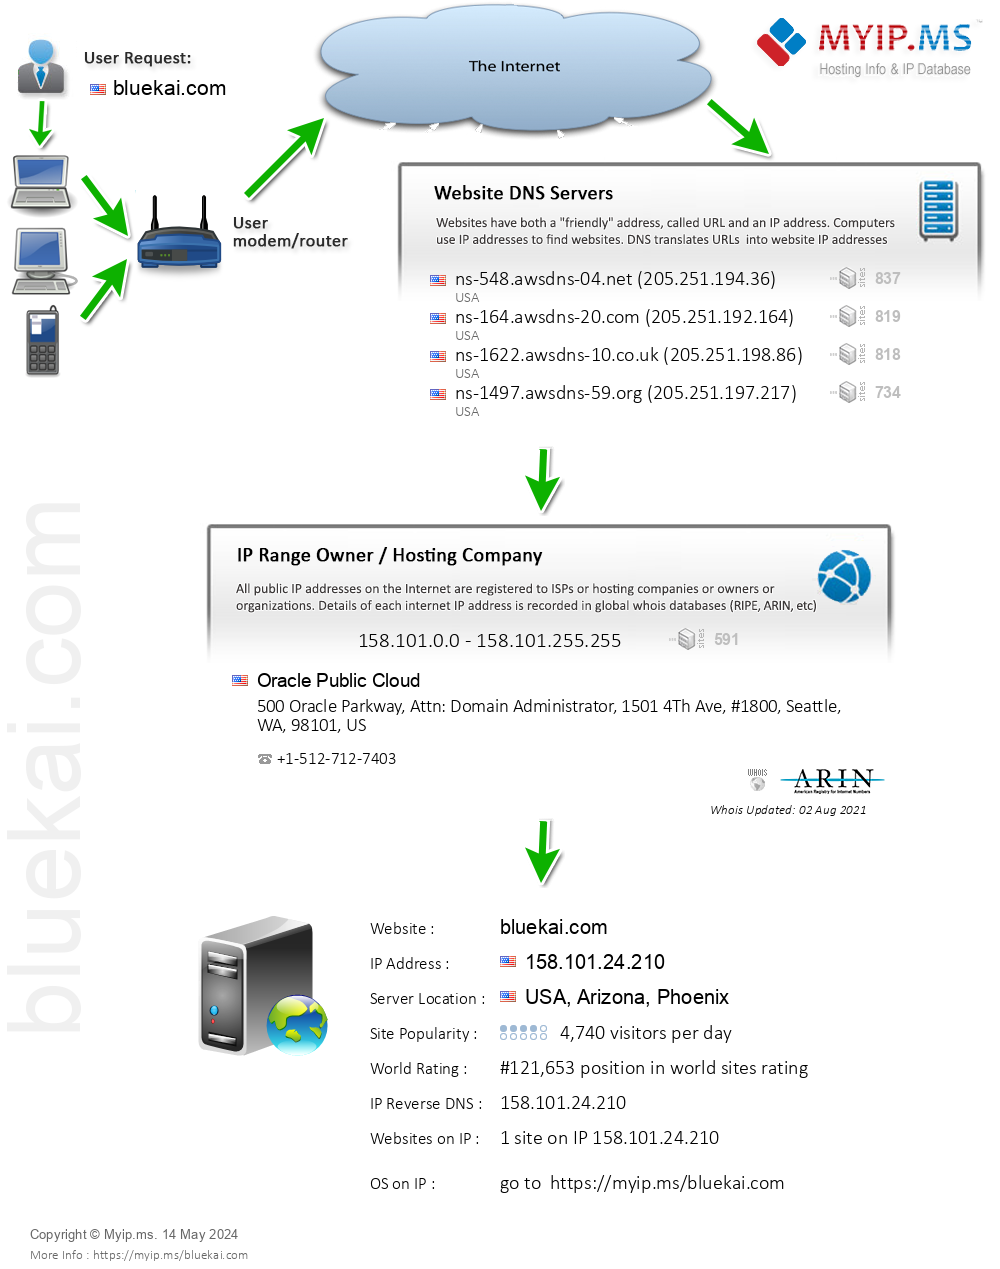 Bluekai.com - Website Hosting Visual IP Diagram